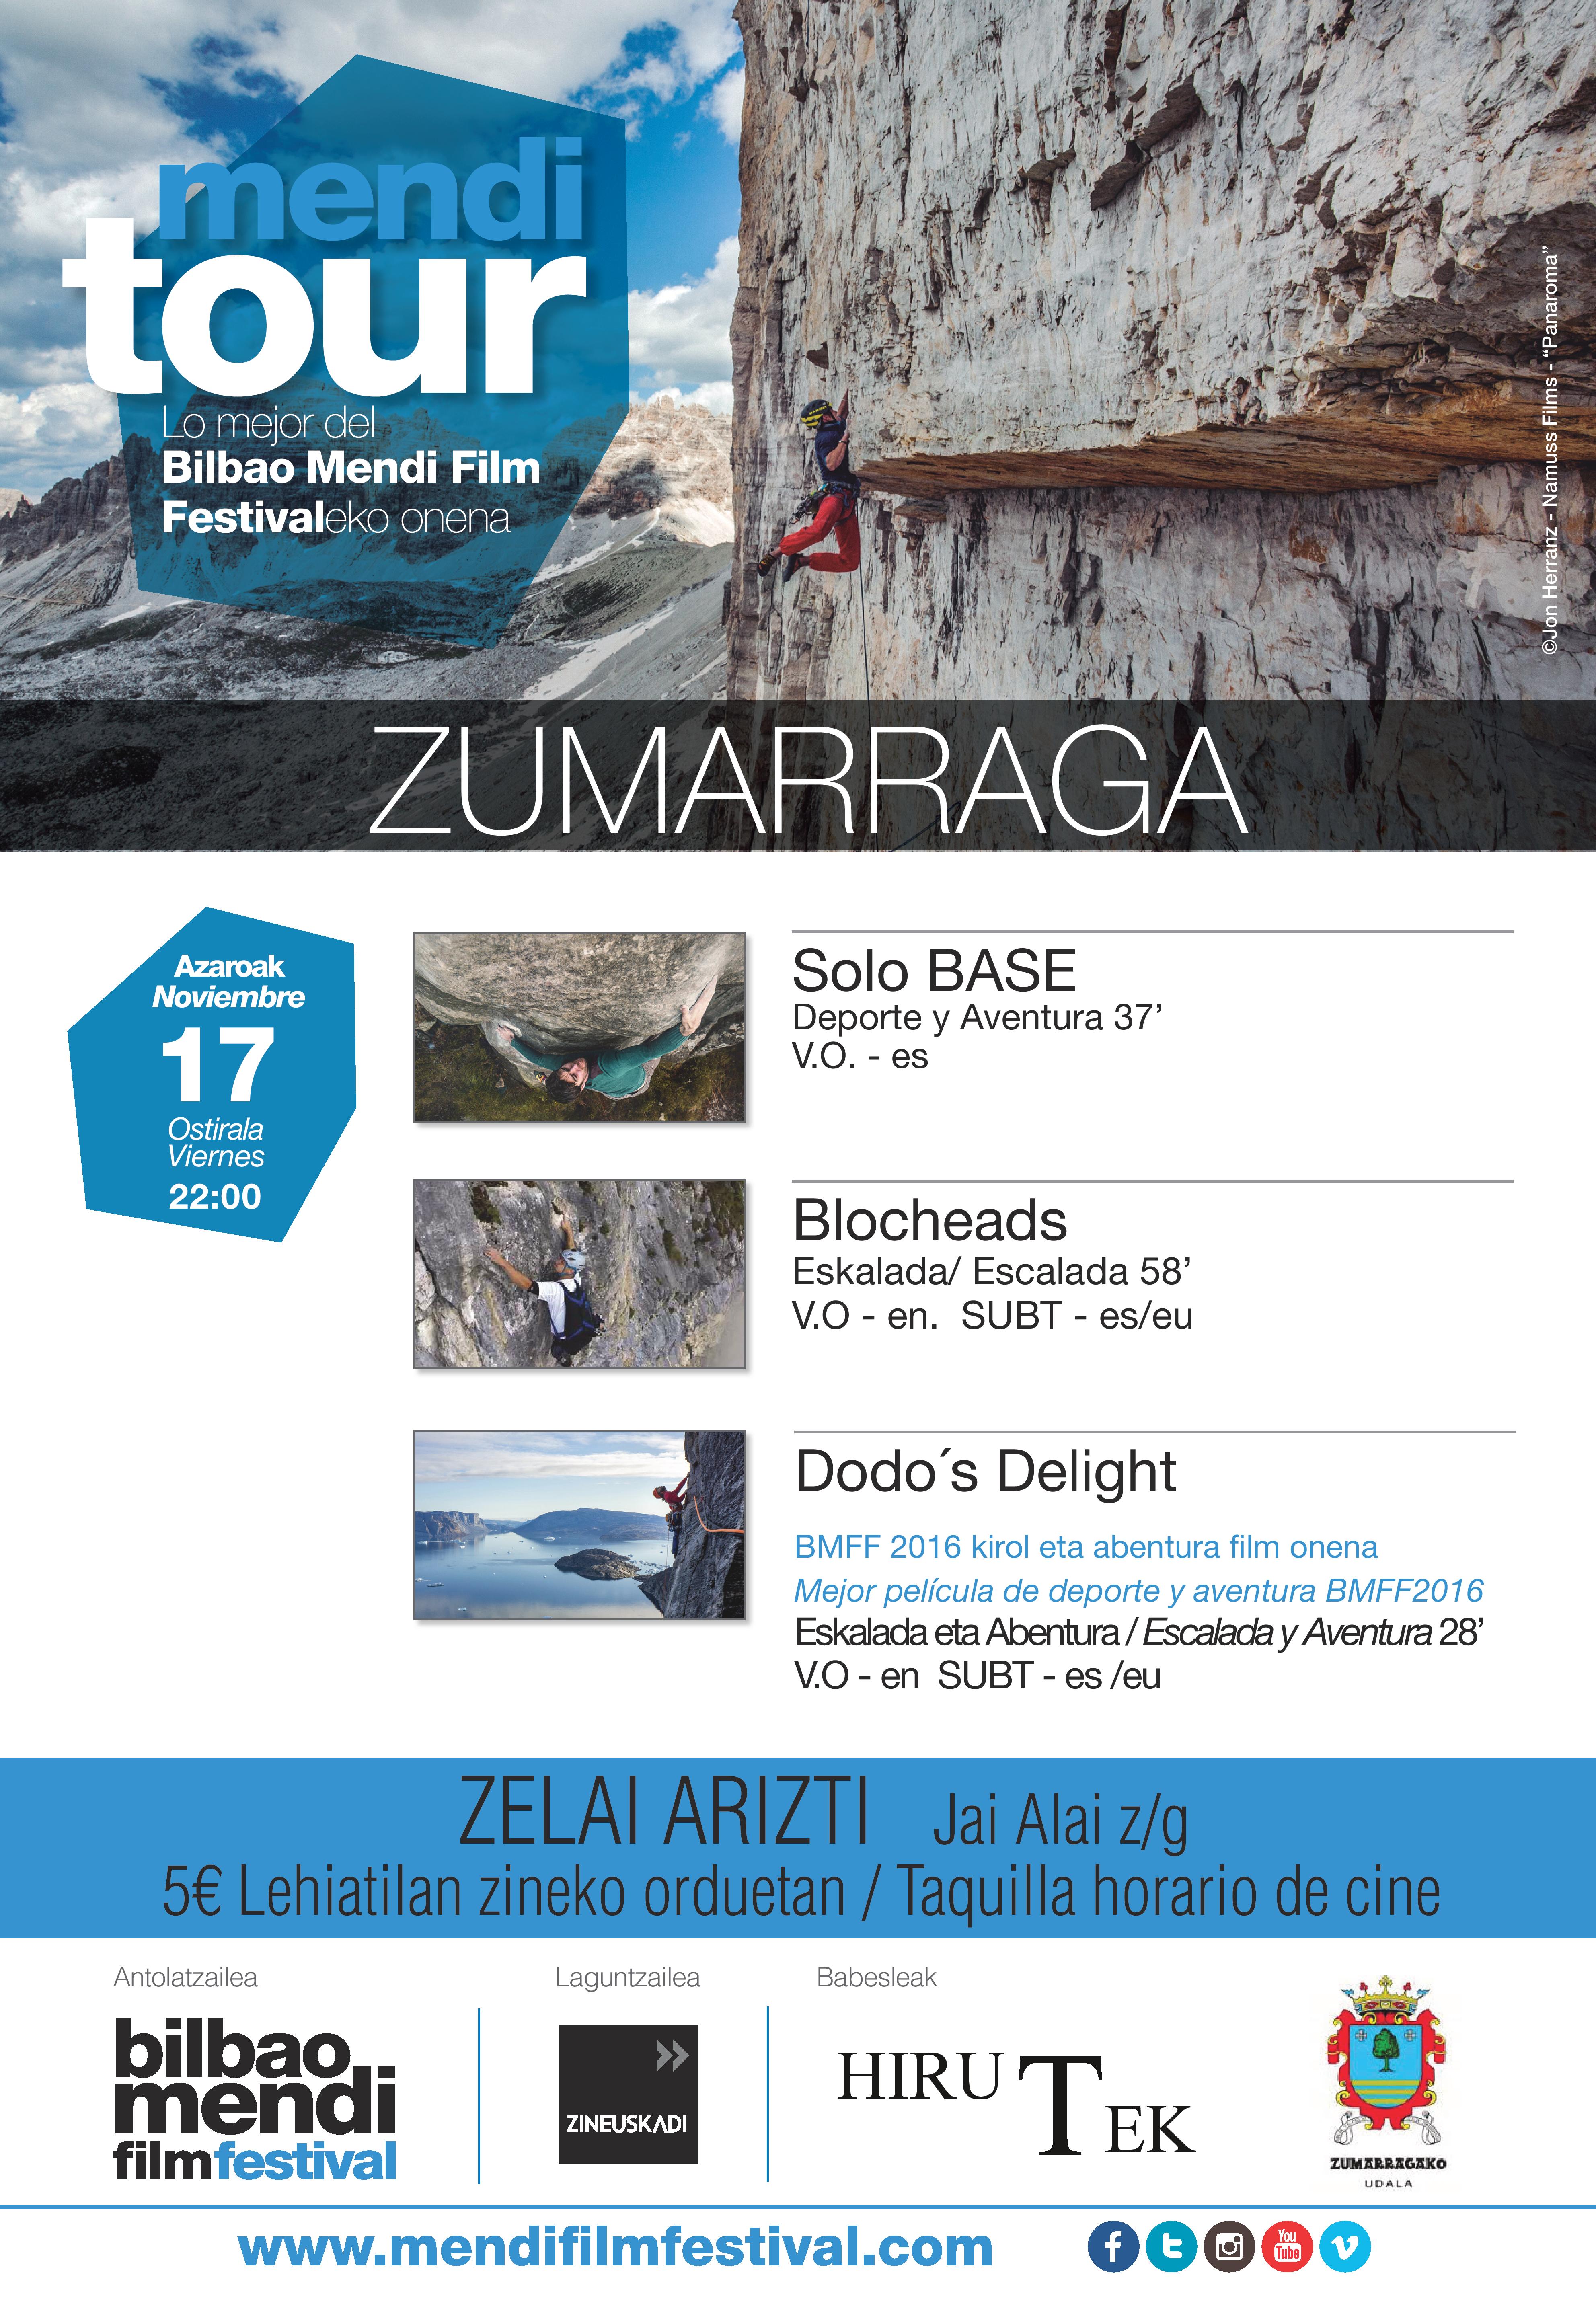 Mendi Tour Zumarraga 2017